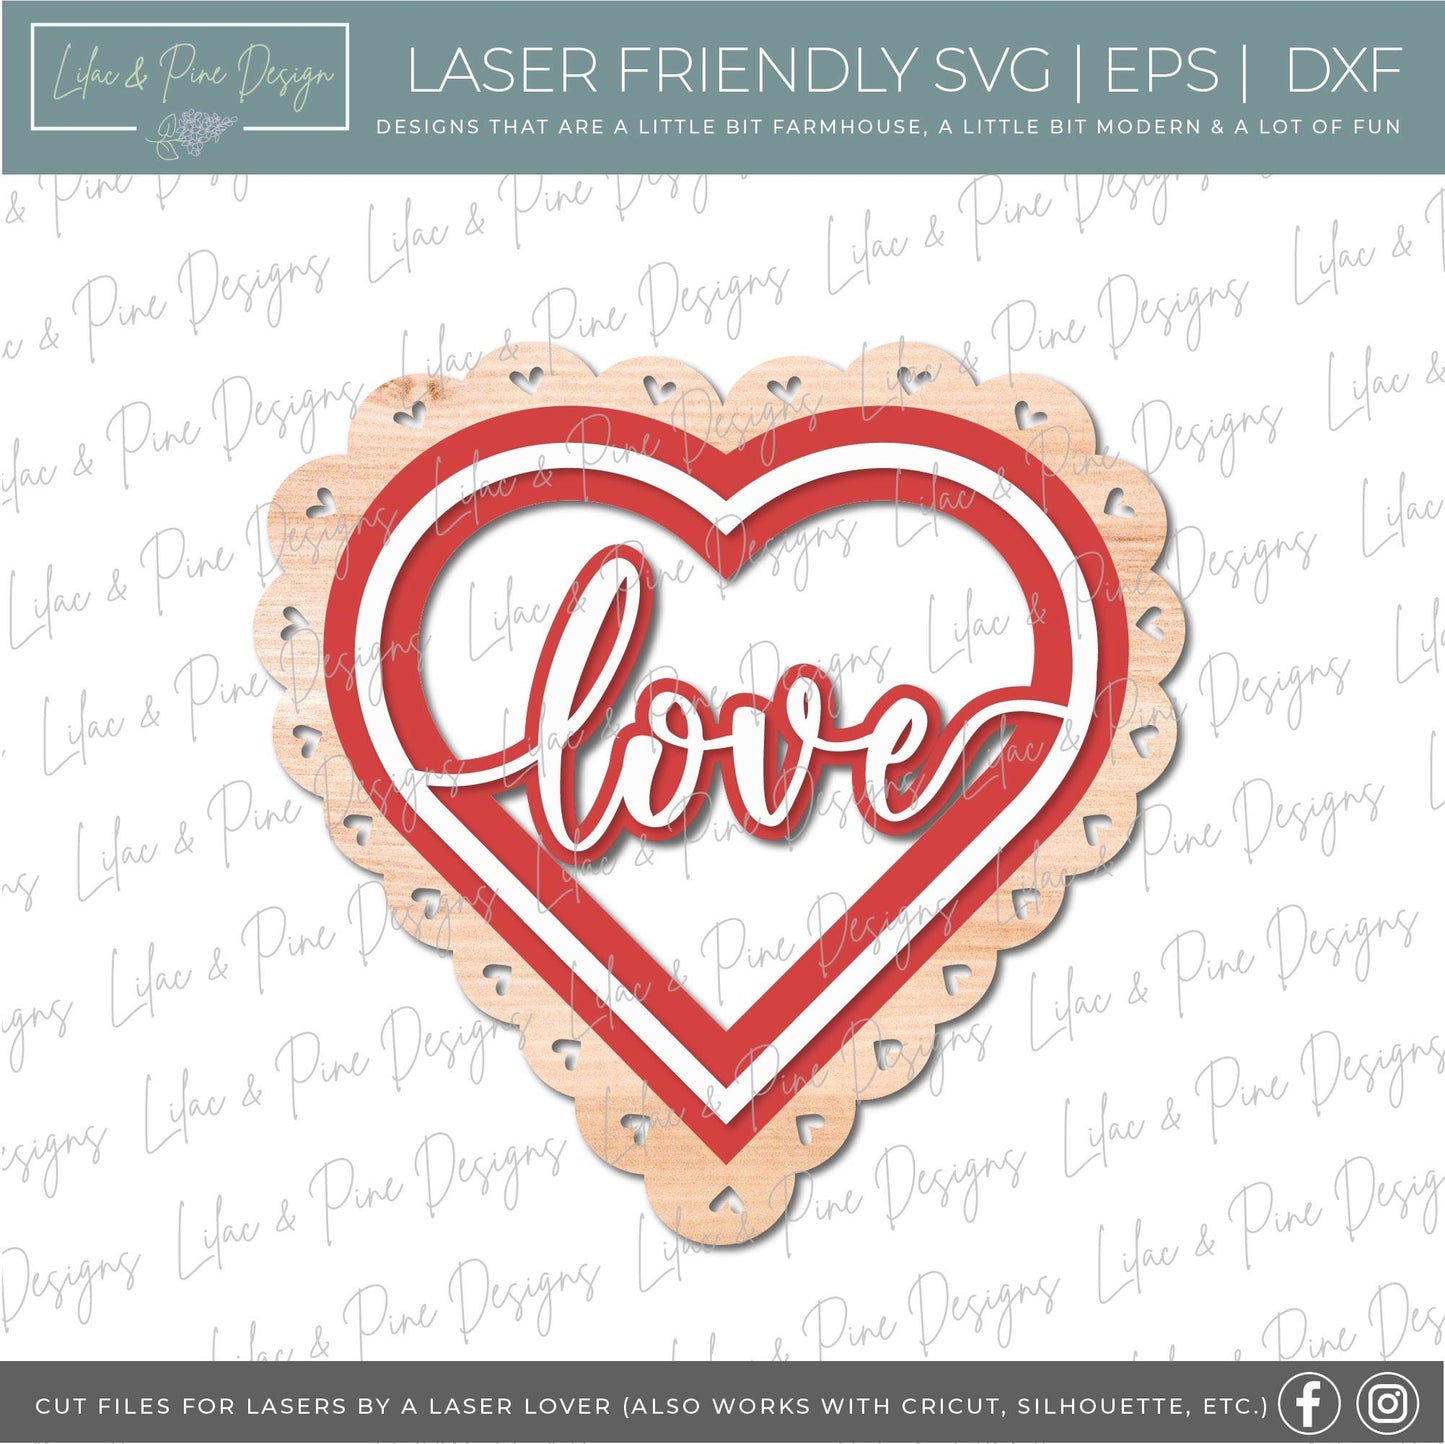 Love heart shaped door hanger, Scalloped Heart Welcome sign SVG, Valentine sign SVG, Valentines Day decor SVG, Glowforge file, laser svg